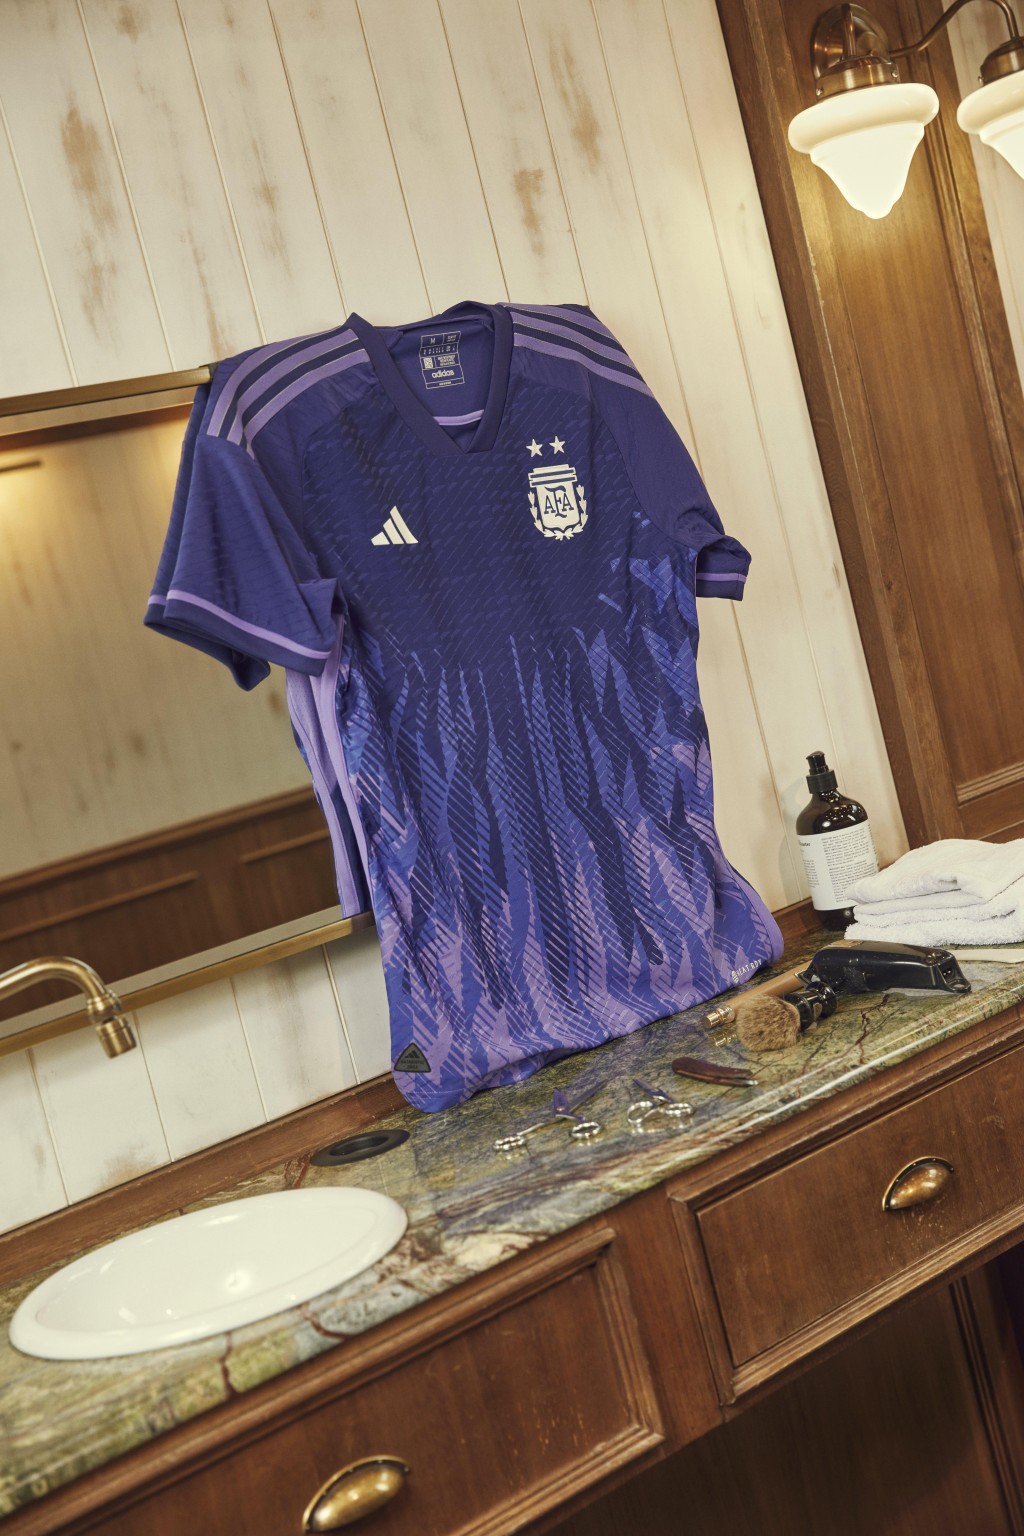 ３）阿根廷 / 作客球衣： 阿根廷作客球衣破格以紫色為基調，火焰狀圖案取自阿根廷國旗的「五月太陽」元素，把創新與傳統元素融合，旨在鼓勵球隊竭盡全力去拼搏，同時傳遞對公平性的追求。Adidas圖片